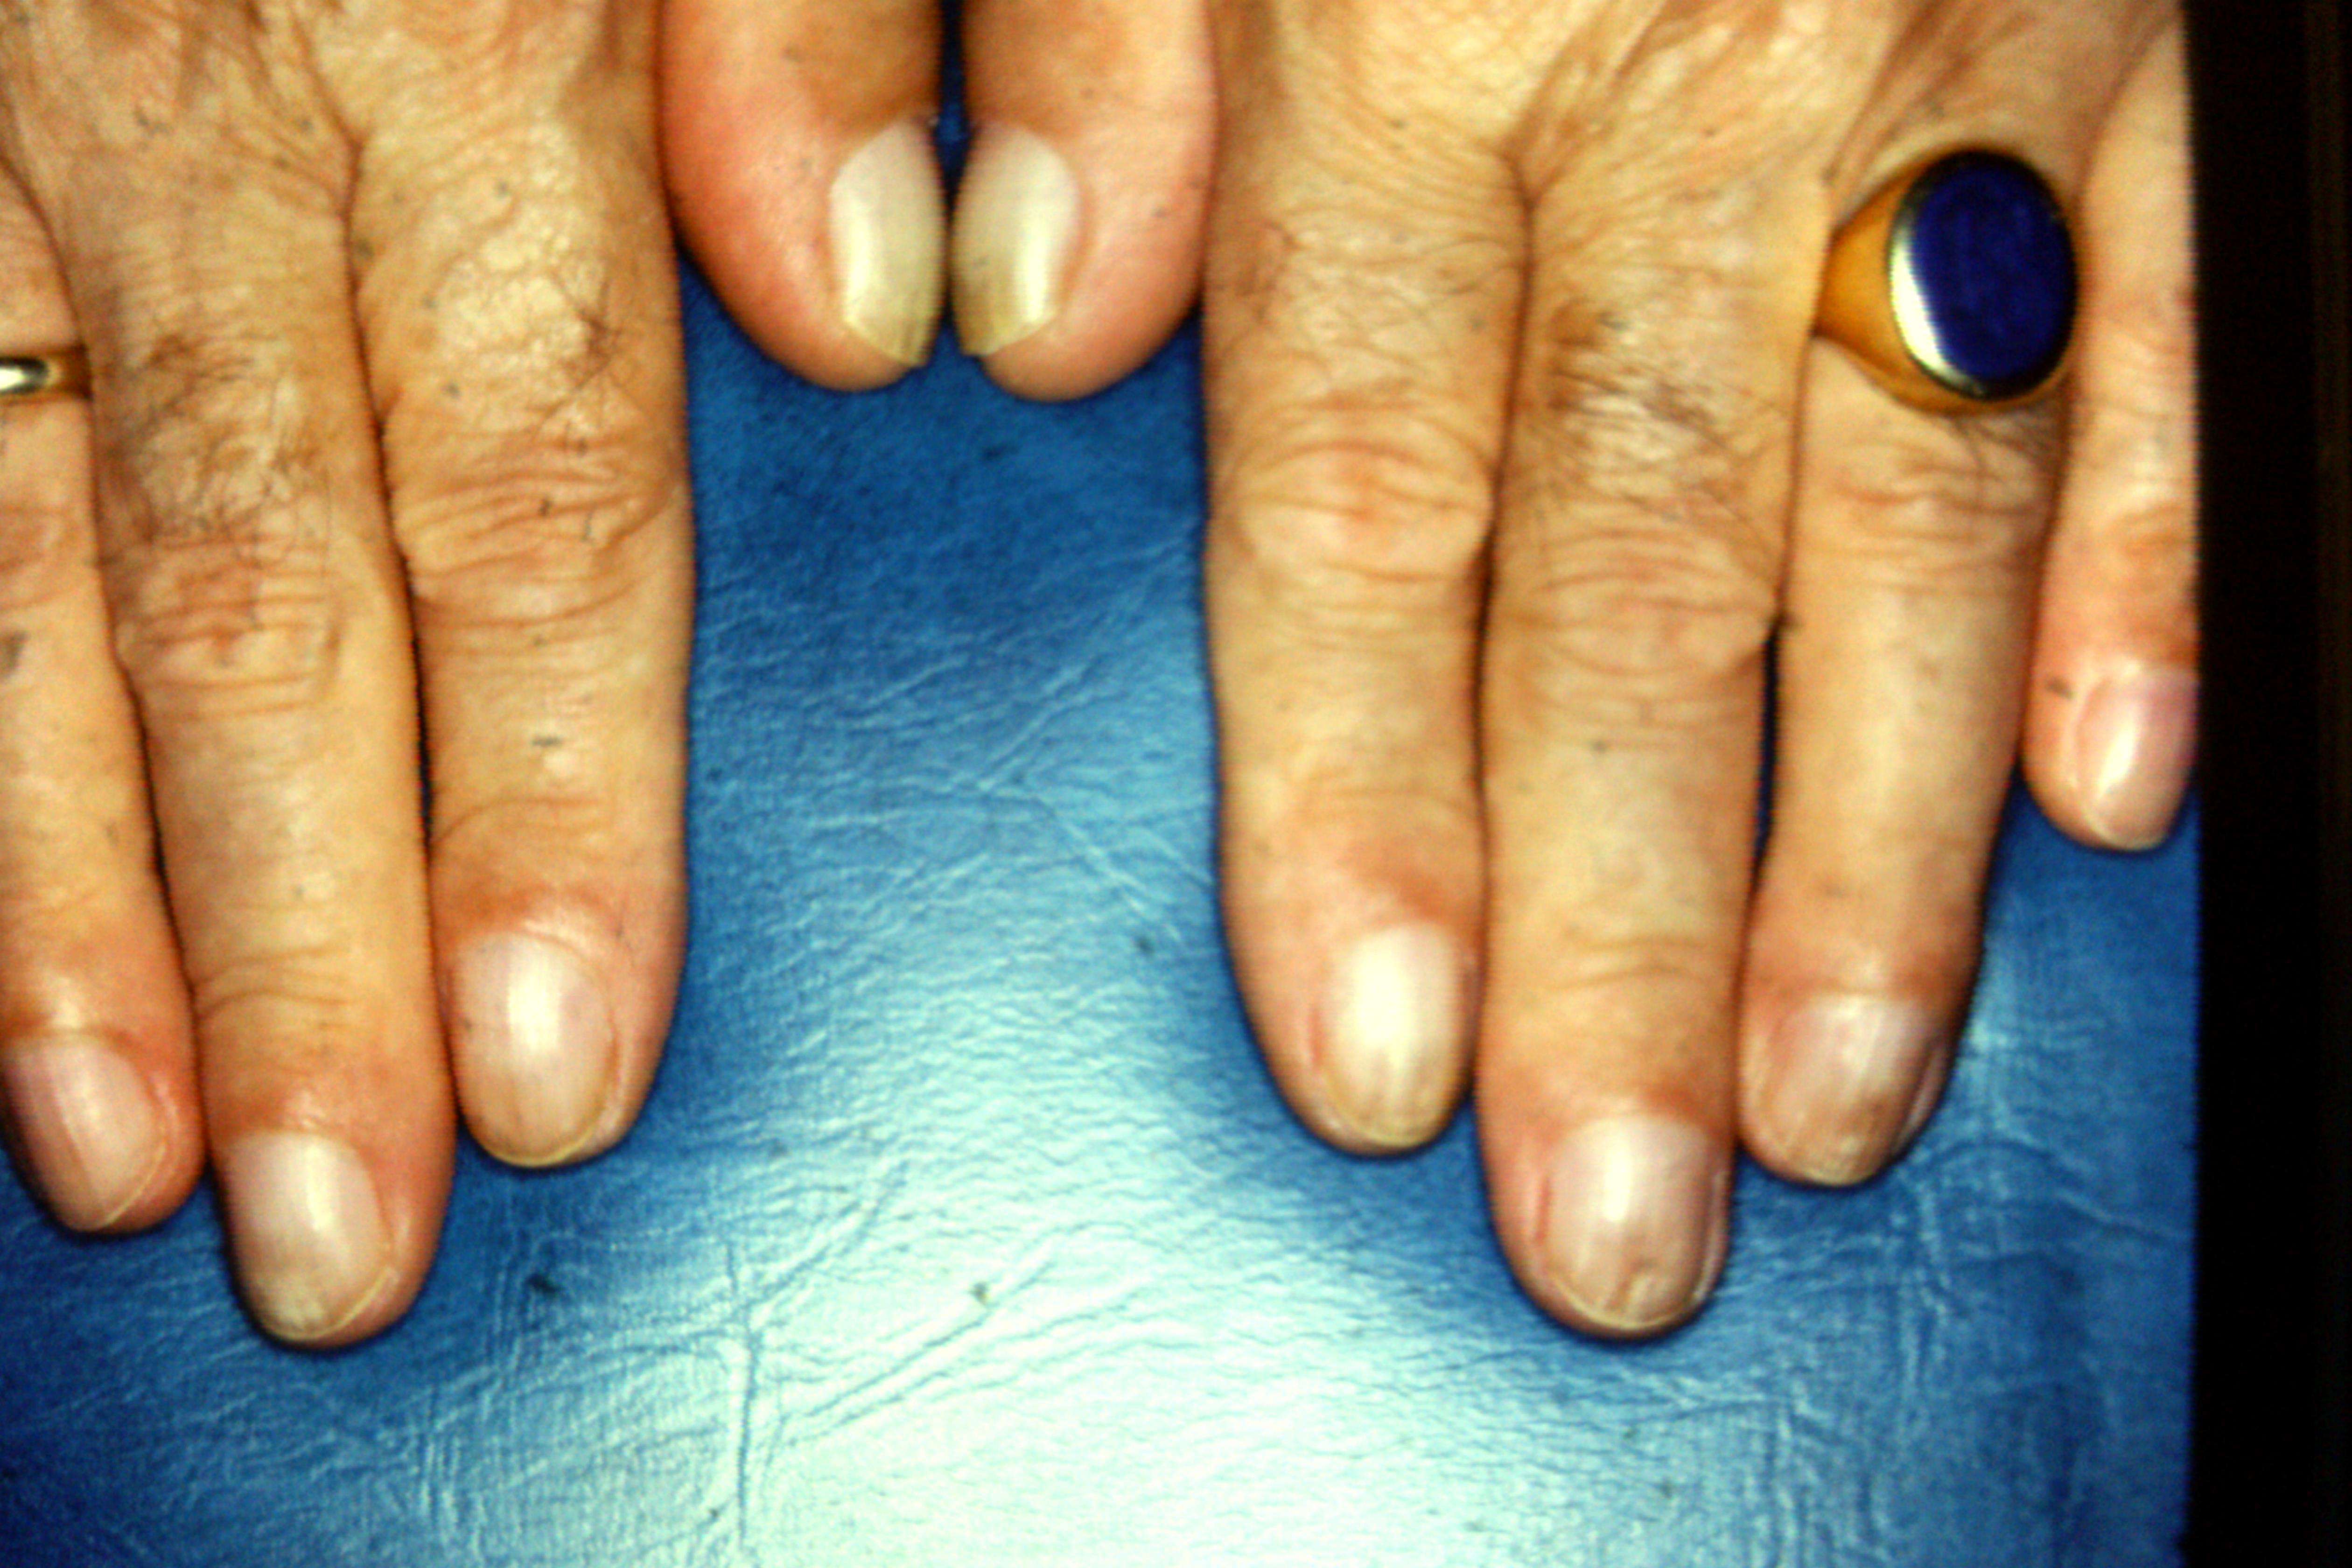 Clubbed Fingernails Clubbing Nails Comprehensive Dermatology Photo Atlas Wayne State University Som Dermatology Image Atlas Wsusom Dermatology Image Atlas